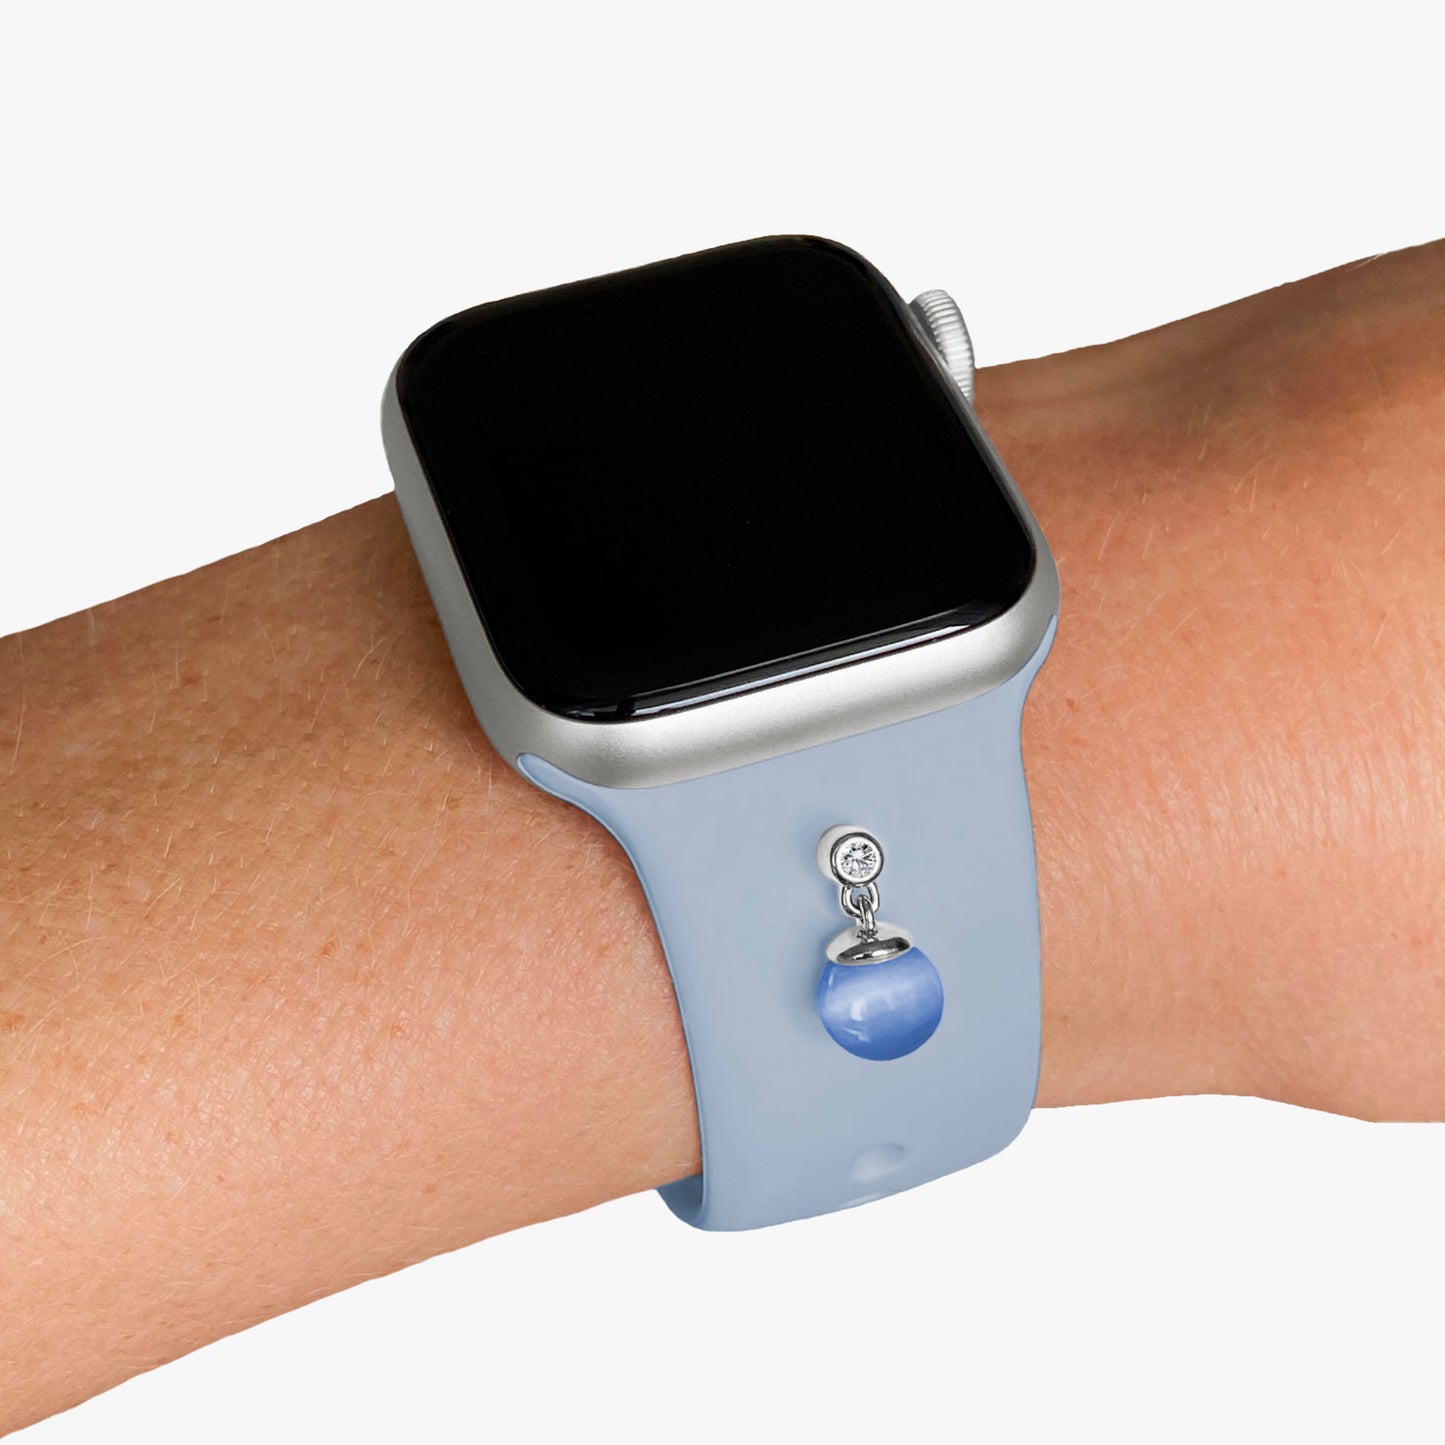 Pamoro® Schmuck Set für Apple Watch - Sportarmband hellblau + Charm in echt Silber rhodniert - bewegliche hellblaue Kugel und weißer Cubic Zirkonia